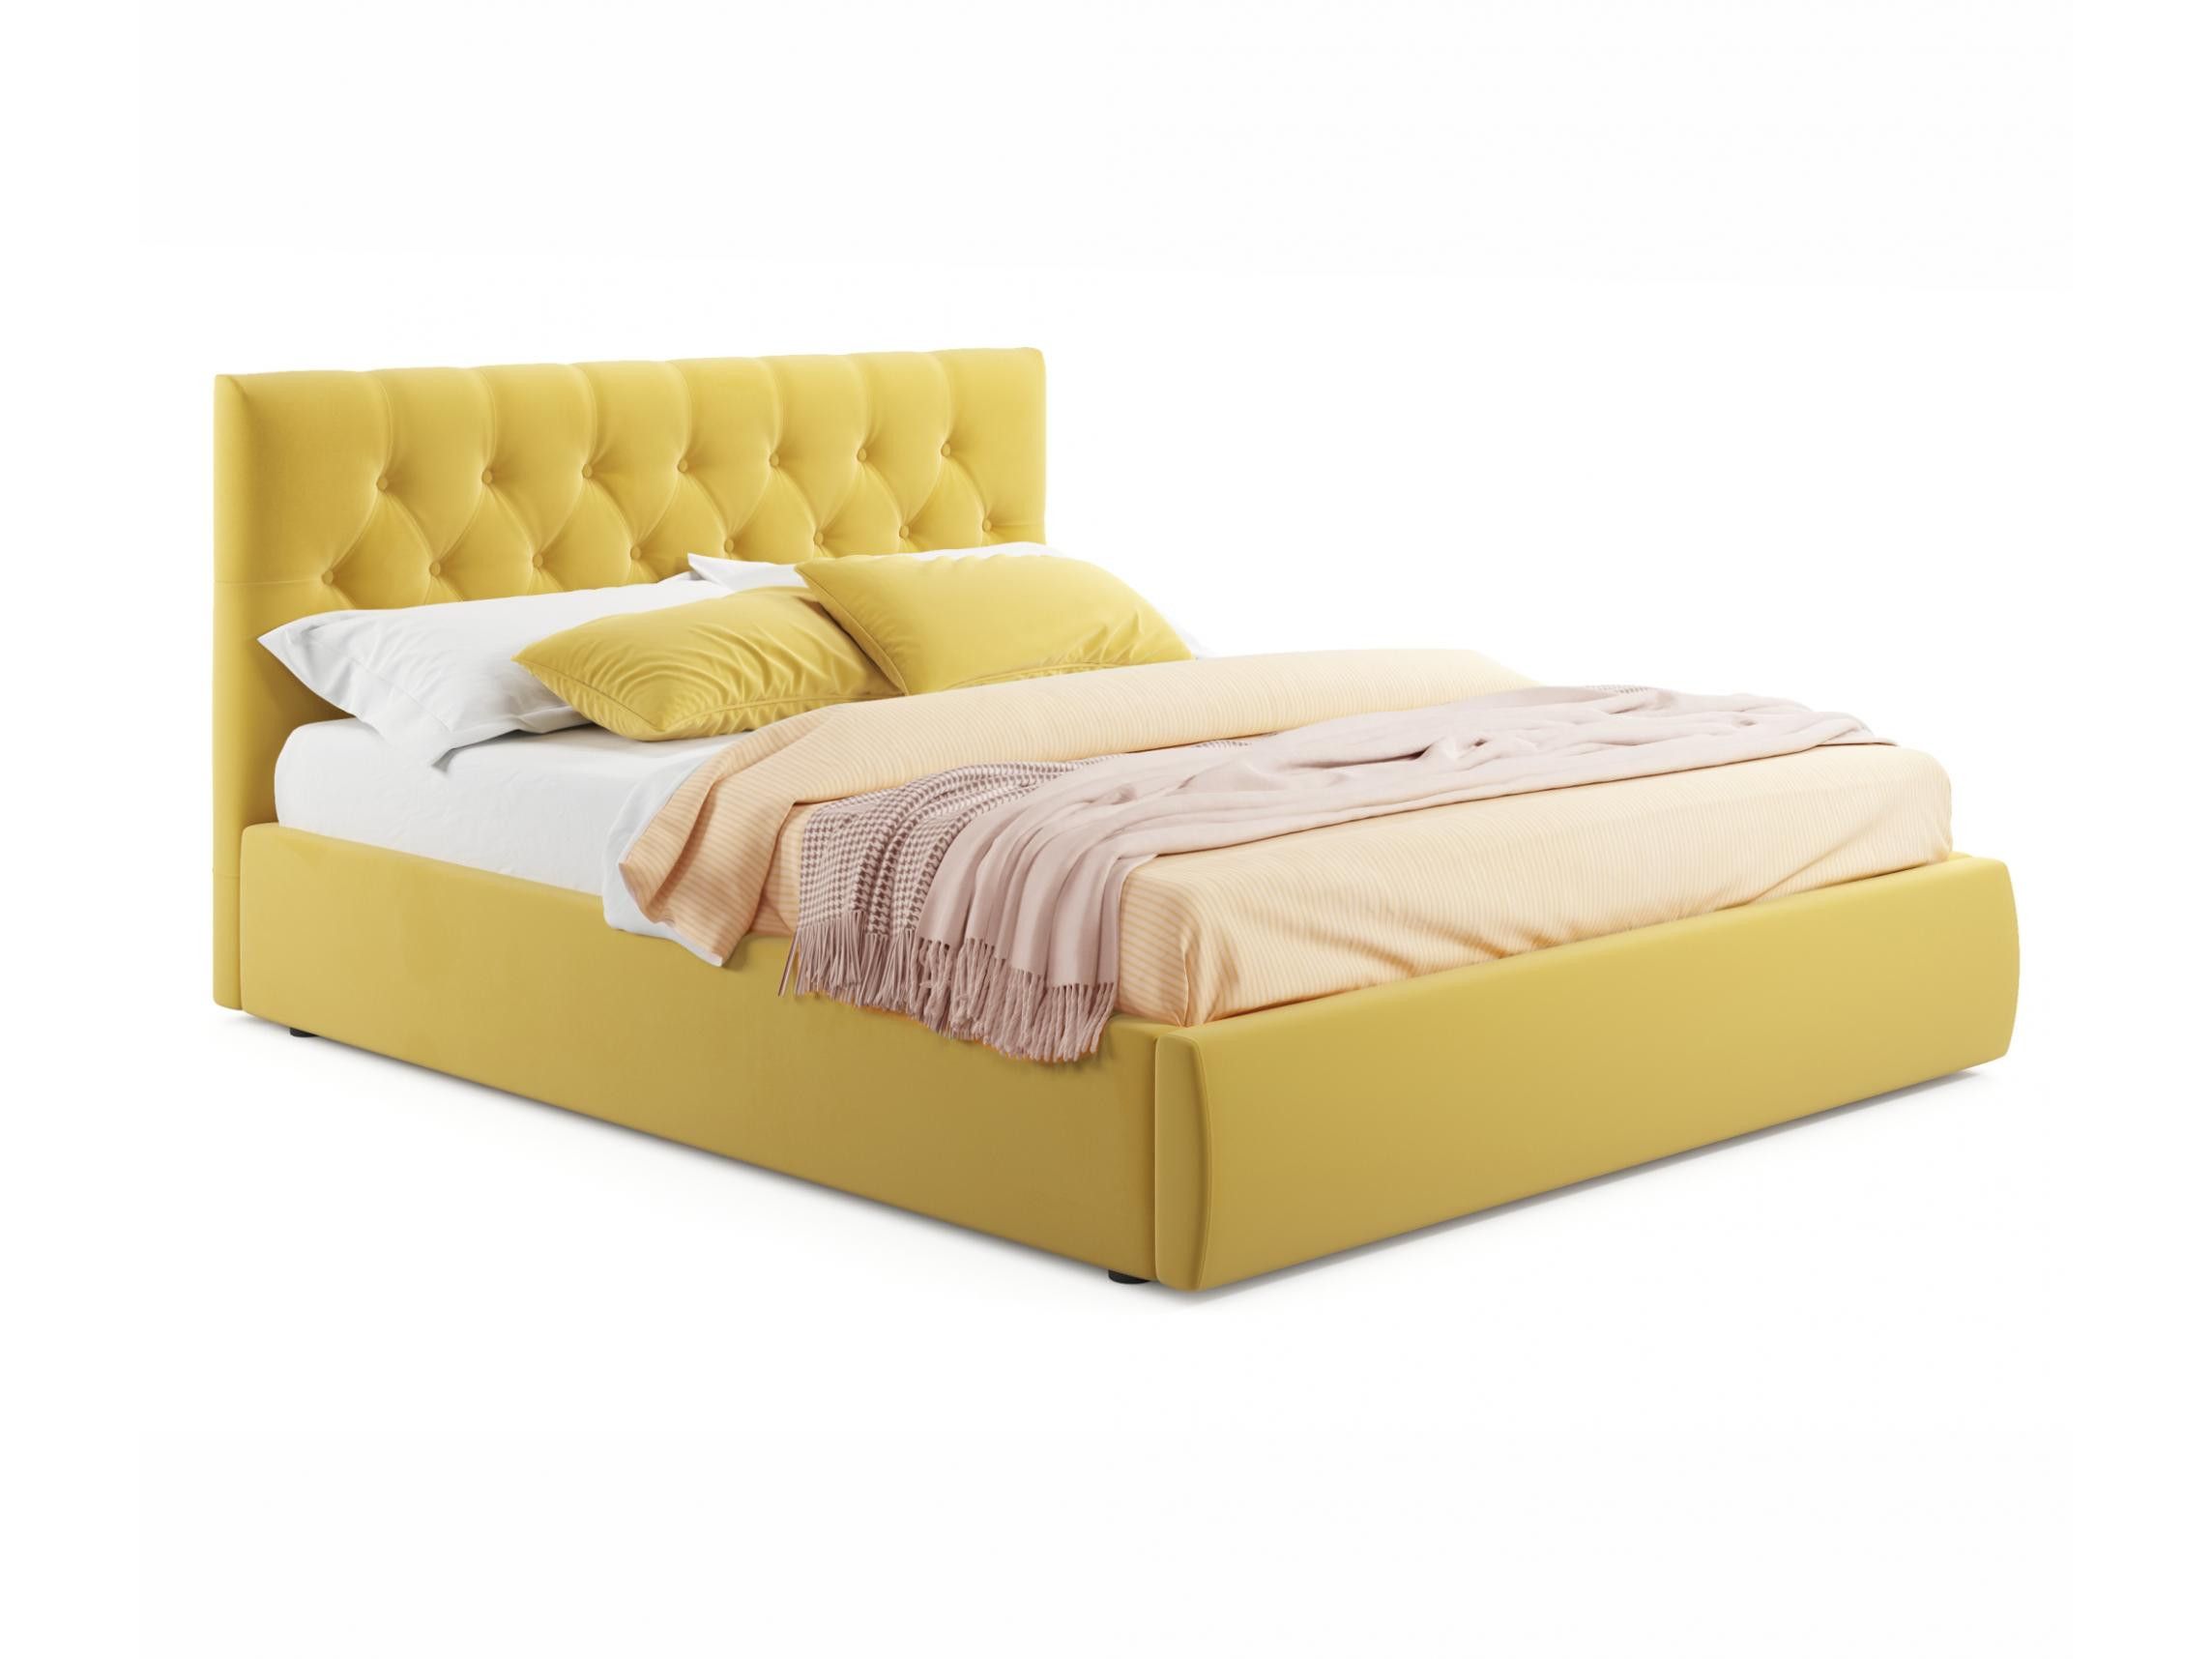 Мягкая кровать Verona 1400 желтая с ортопедическим основанием желтый, Желтый, Велюр, ДСП